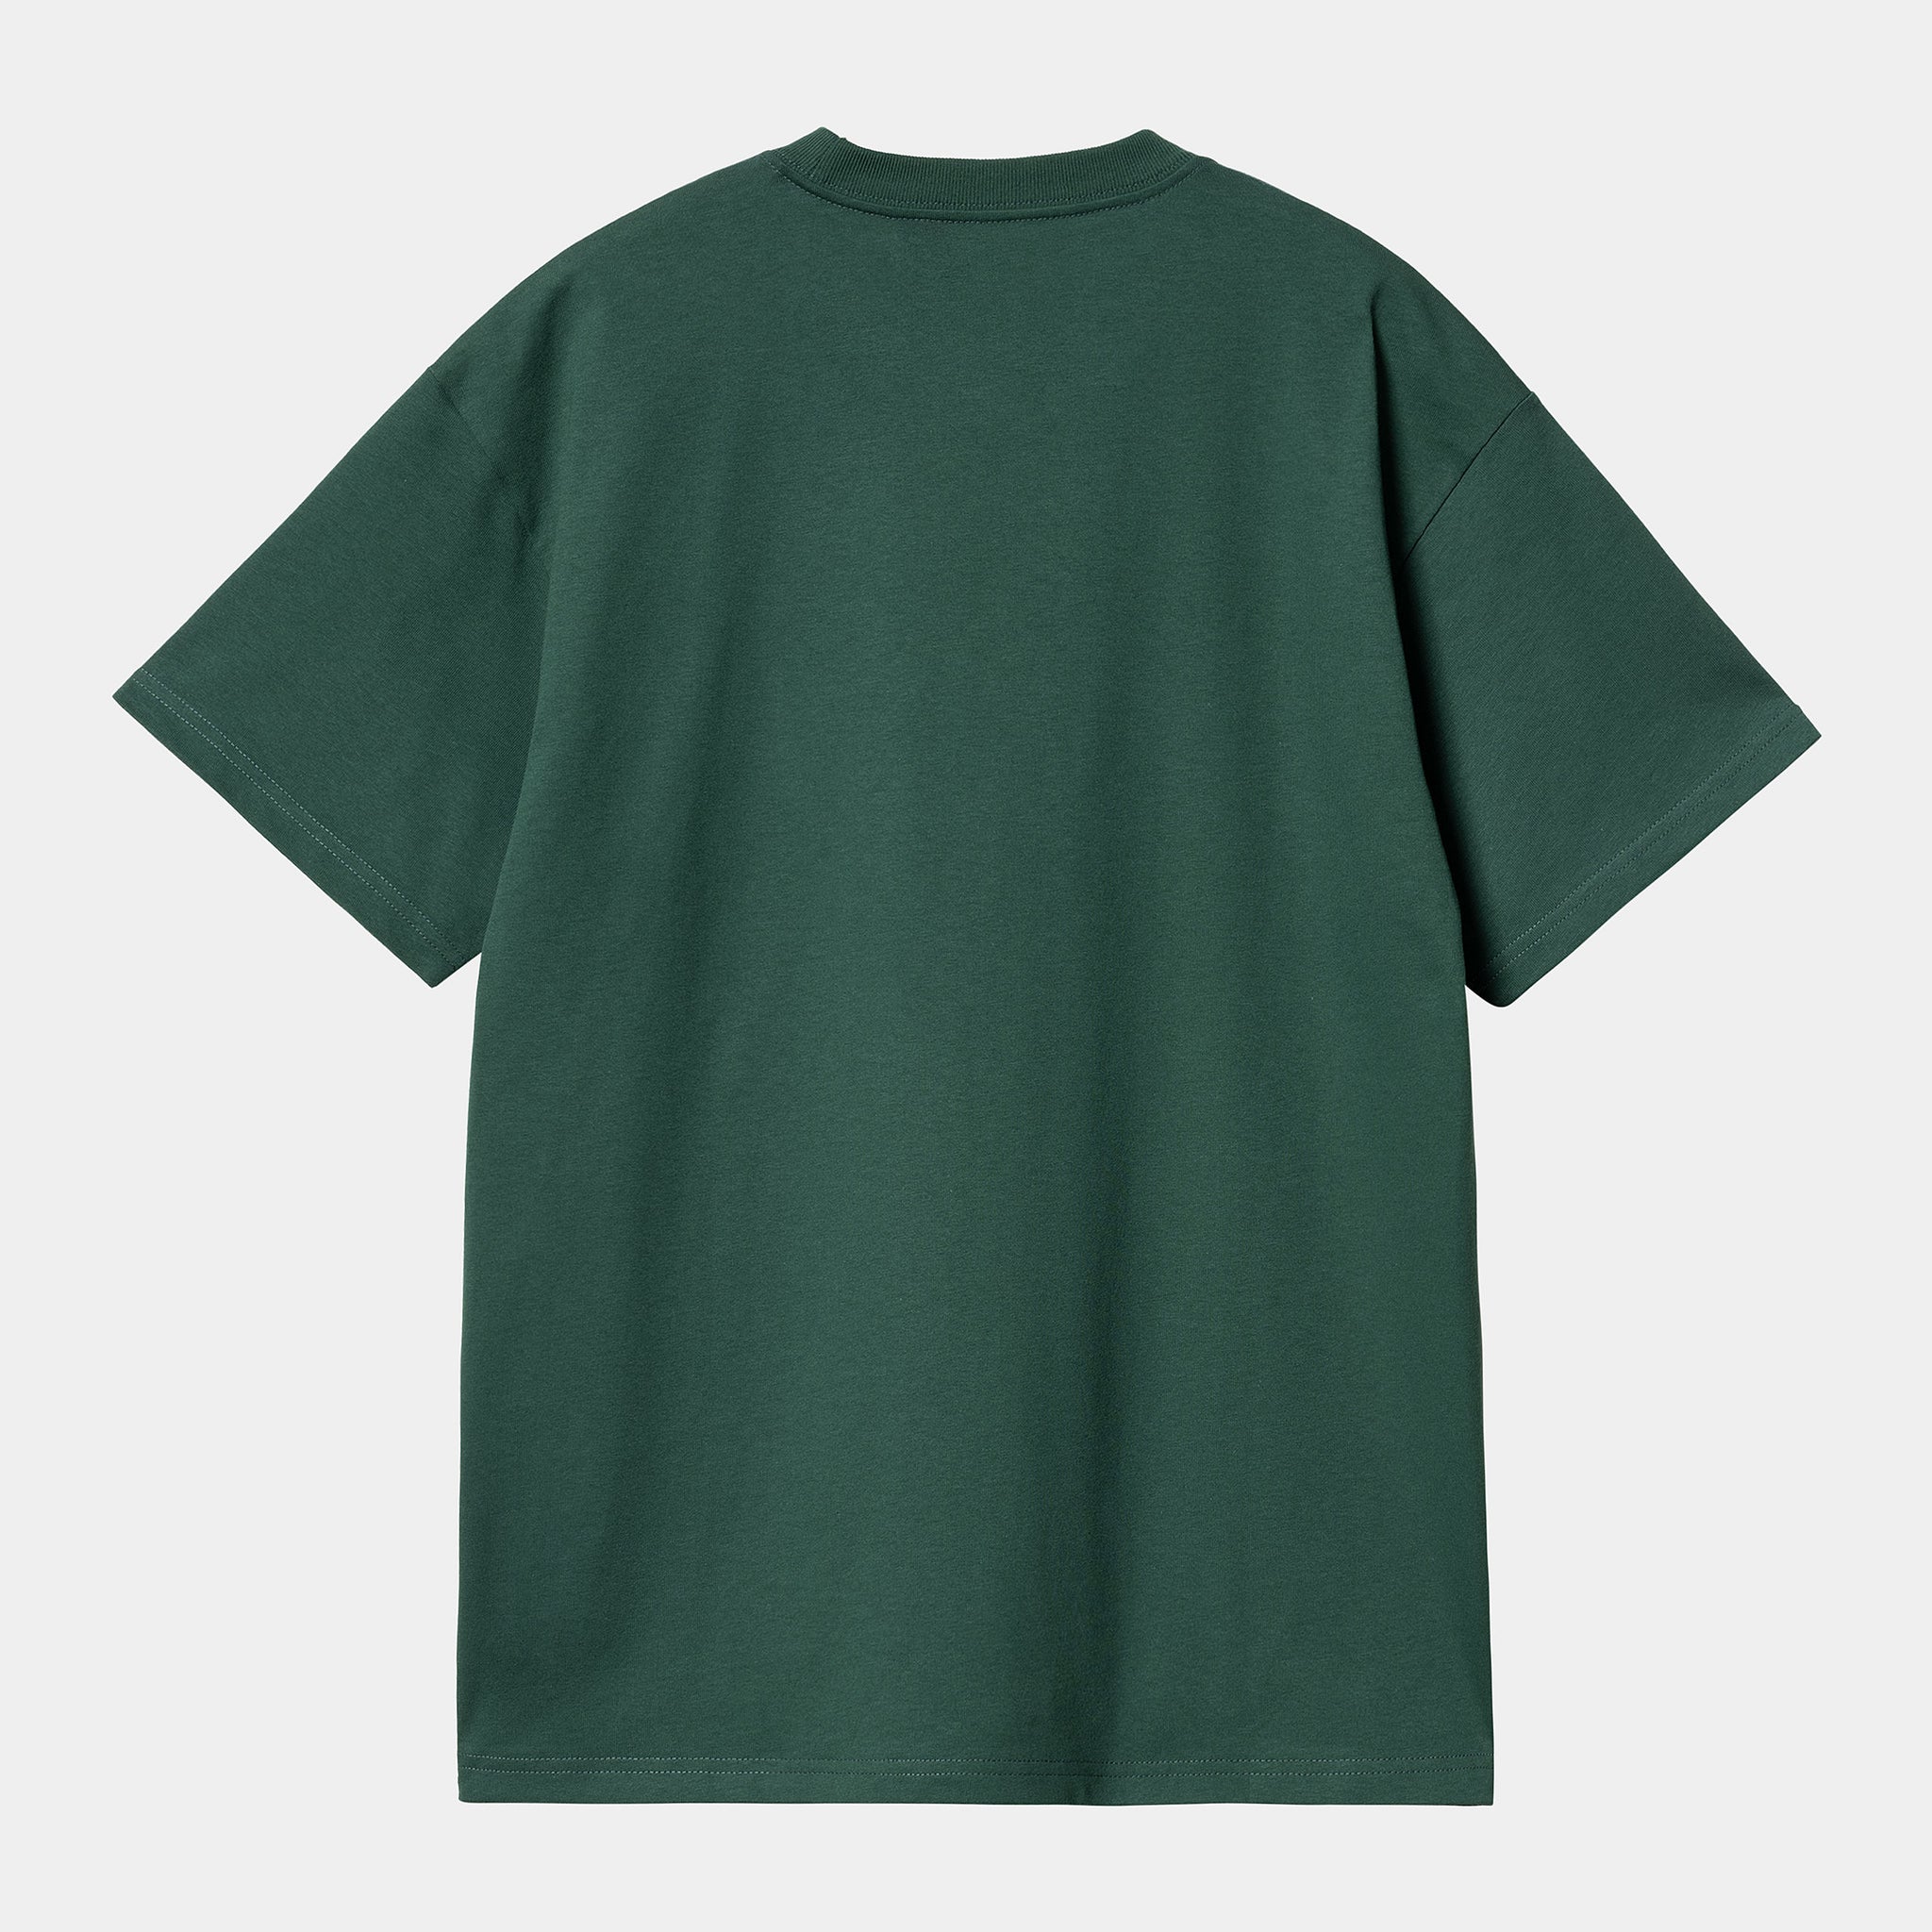 Carhartt WIP S/S Ony T-Shirt Chervil / Wax